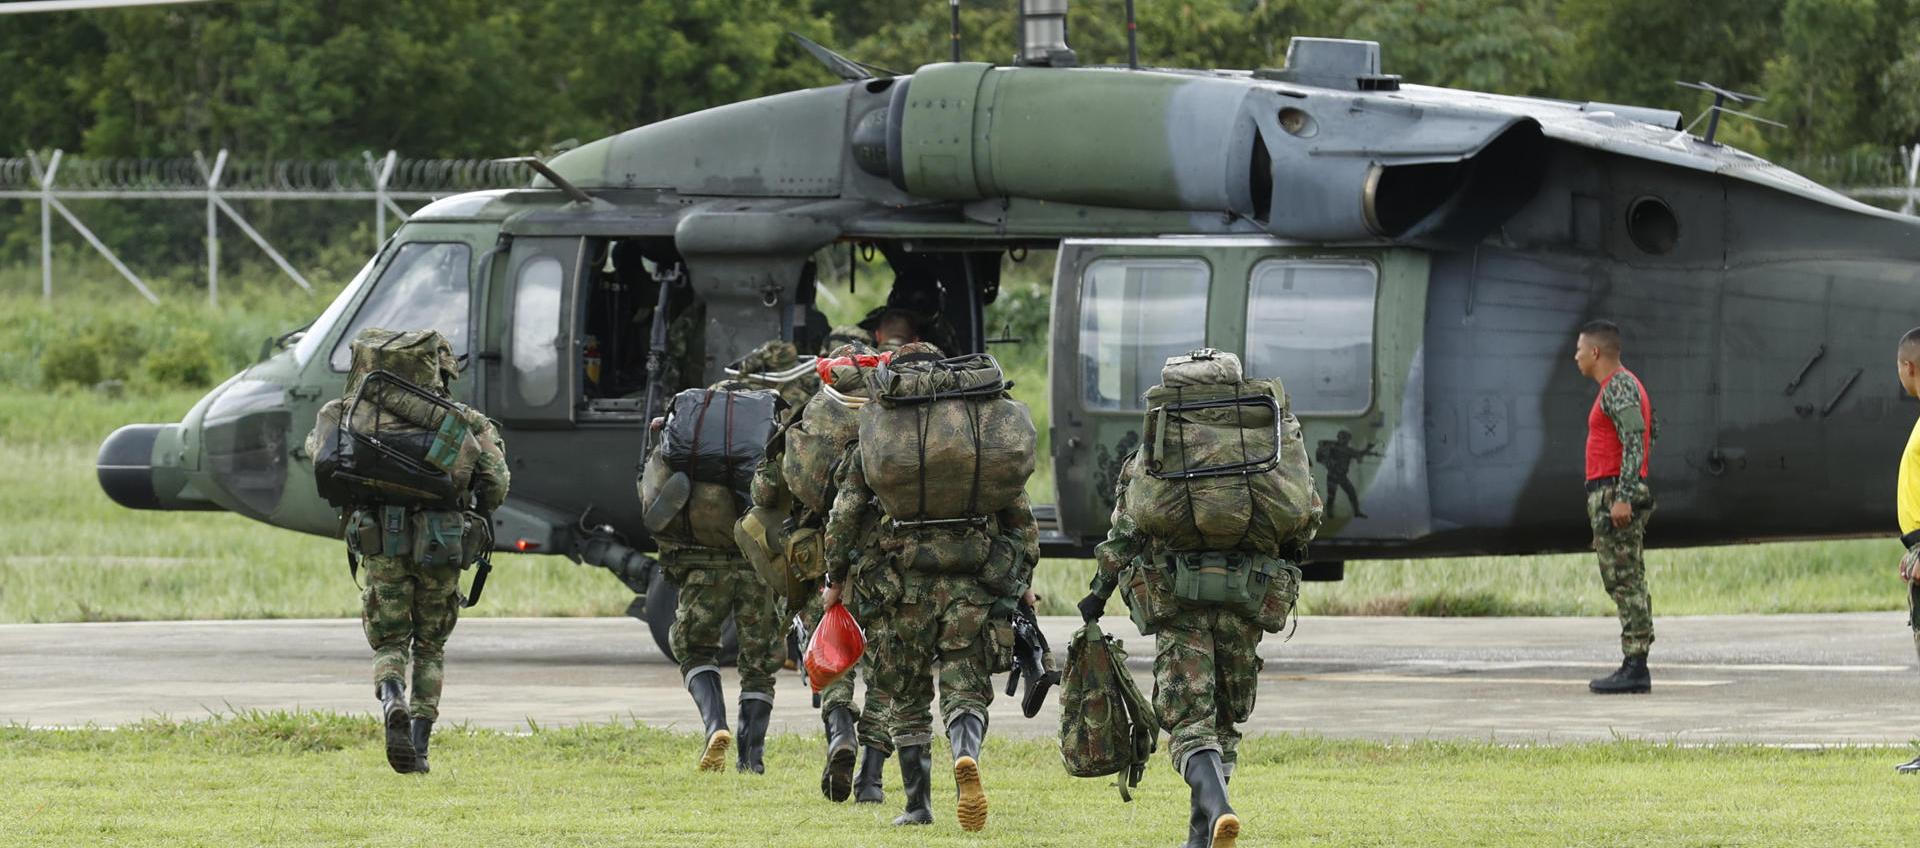 Soldados abordan un helicóptero que se dirige a la zona de búsqueda de los menores perdidos en la selva desde haced 21 días